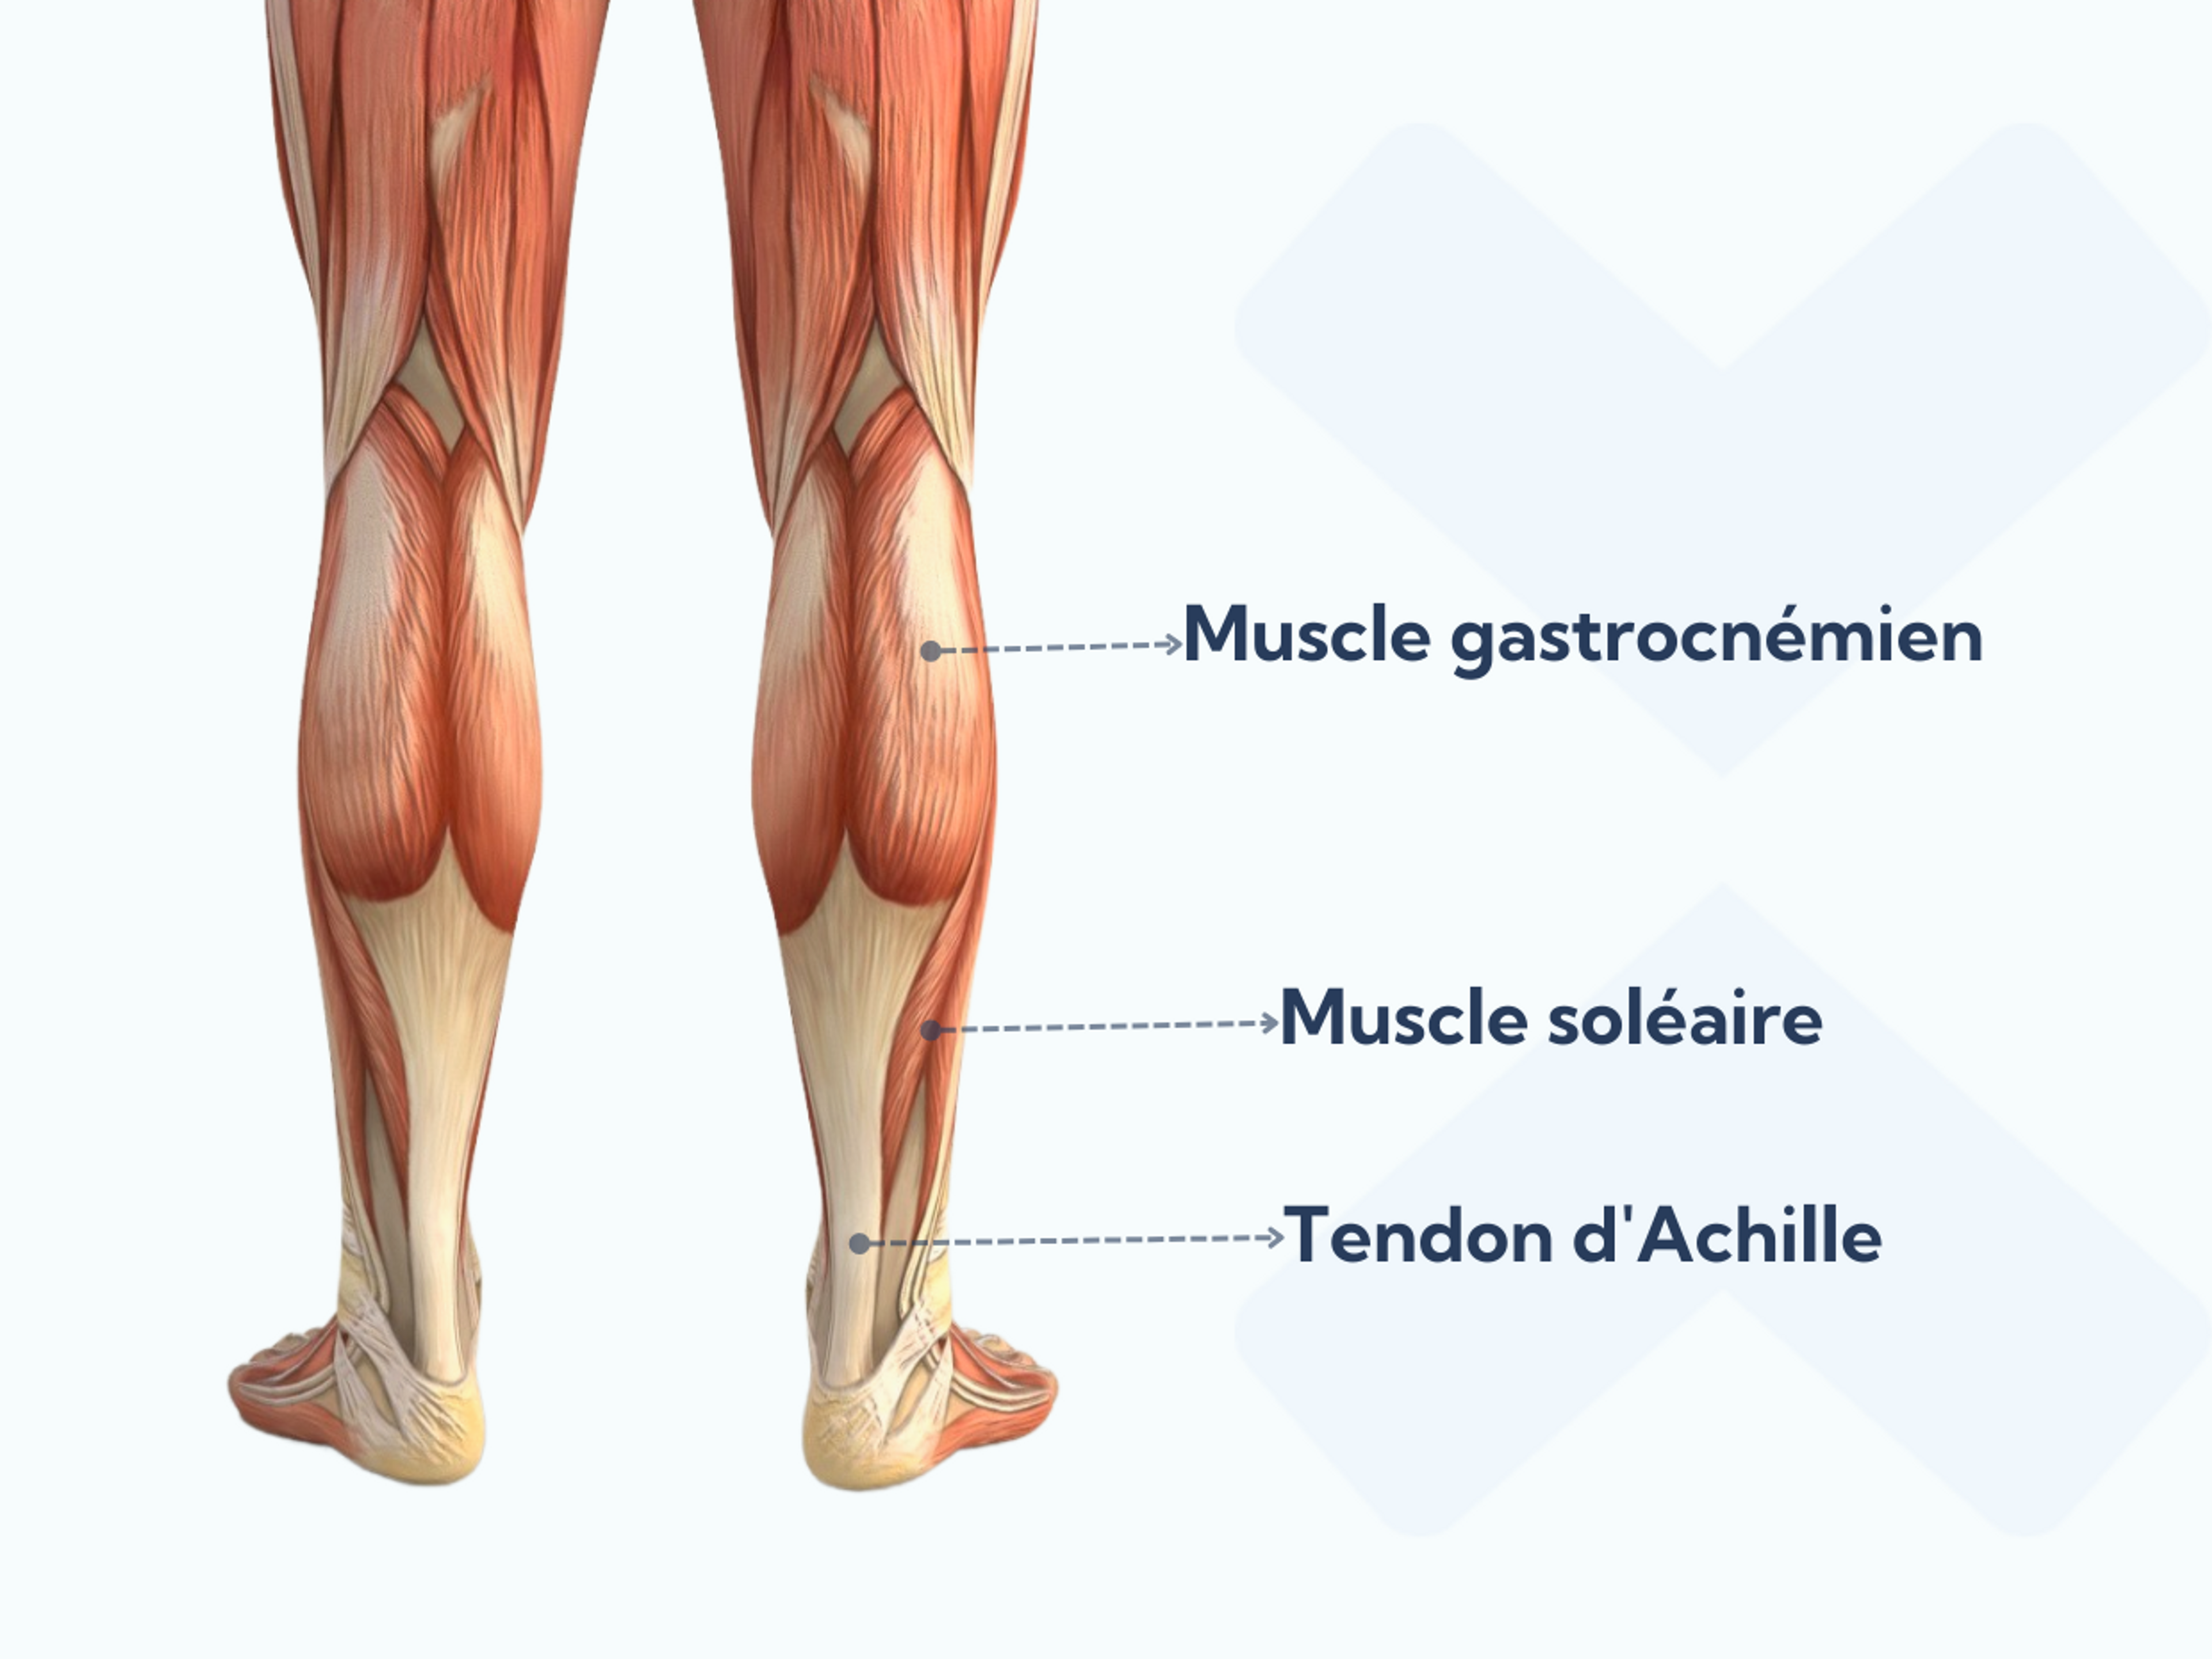 Anatomie du mollet et du tendon d’Achille